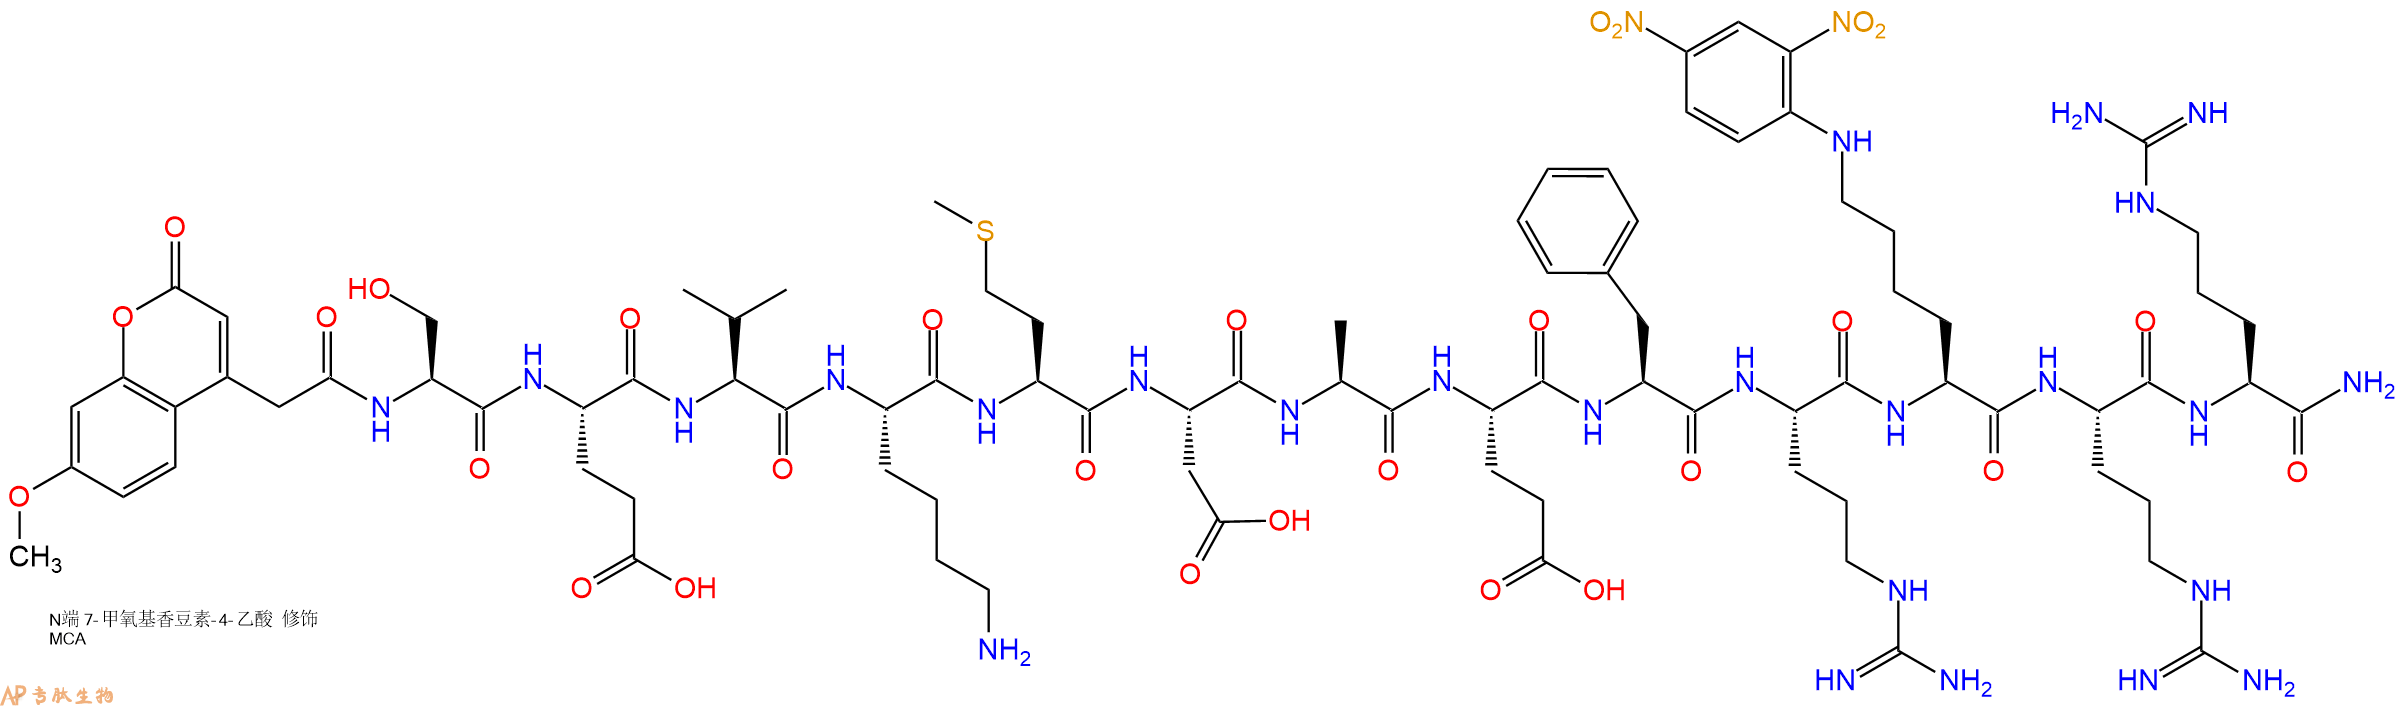 专肽生物产品淀粉肽Mca-Amyloid β/A4 Protein Precursor₇₇₀ (667-676)1802078-33-6